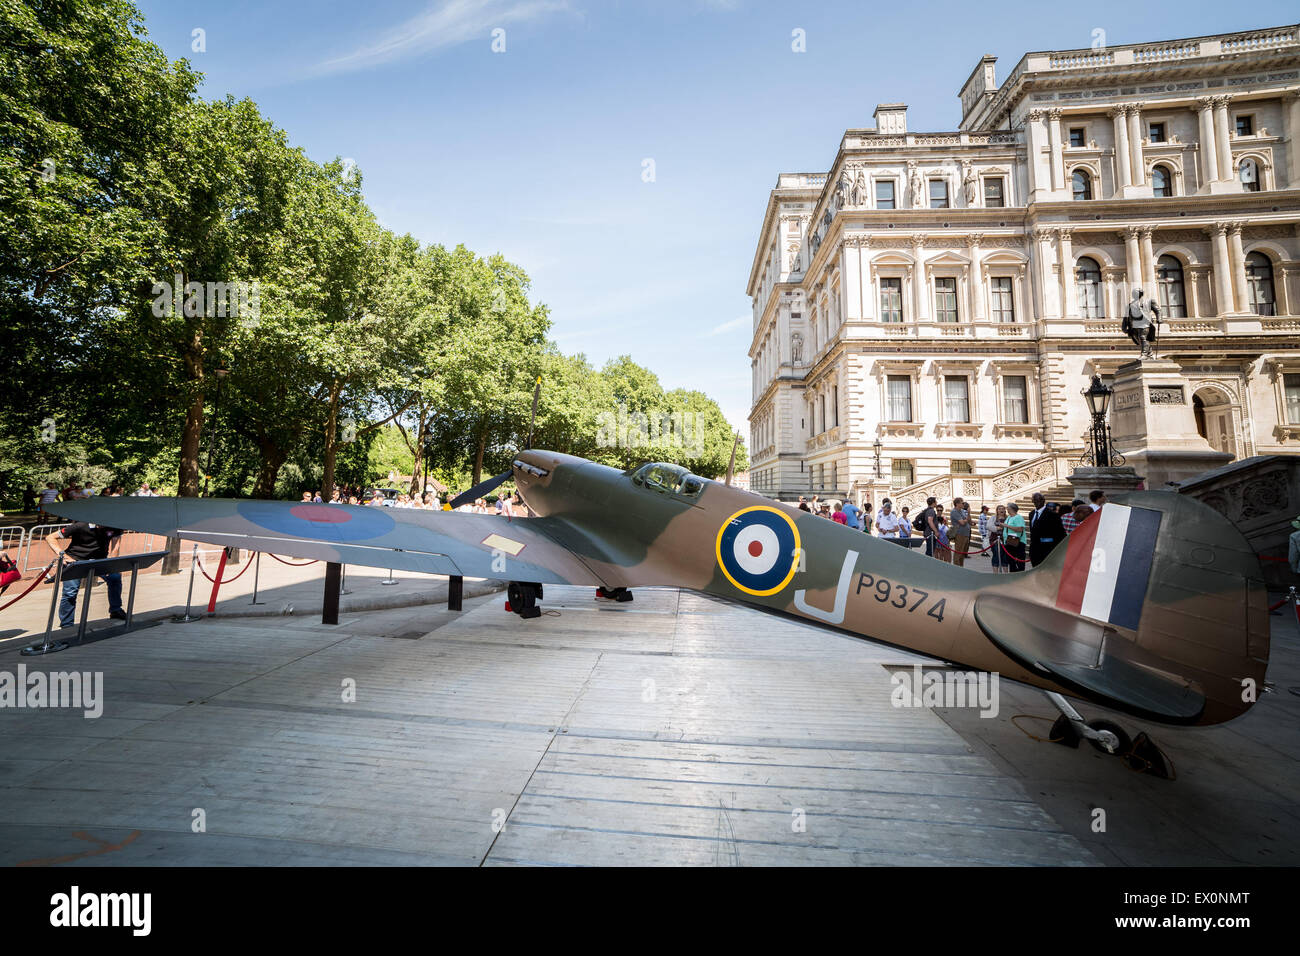 Londres, Royaume-Uni. 3 juillet, 2015. Un Vickers Supermarine Spitfire Mk 1A avion est illustré à l'extérieur de la Churchill War Rooms avant sa mise en vente par Christie's auction house Crédit : Guy Josse/Alamy Live News Banque D'Images